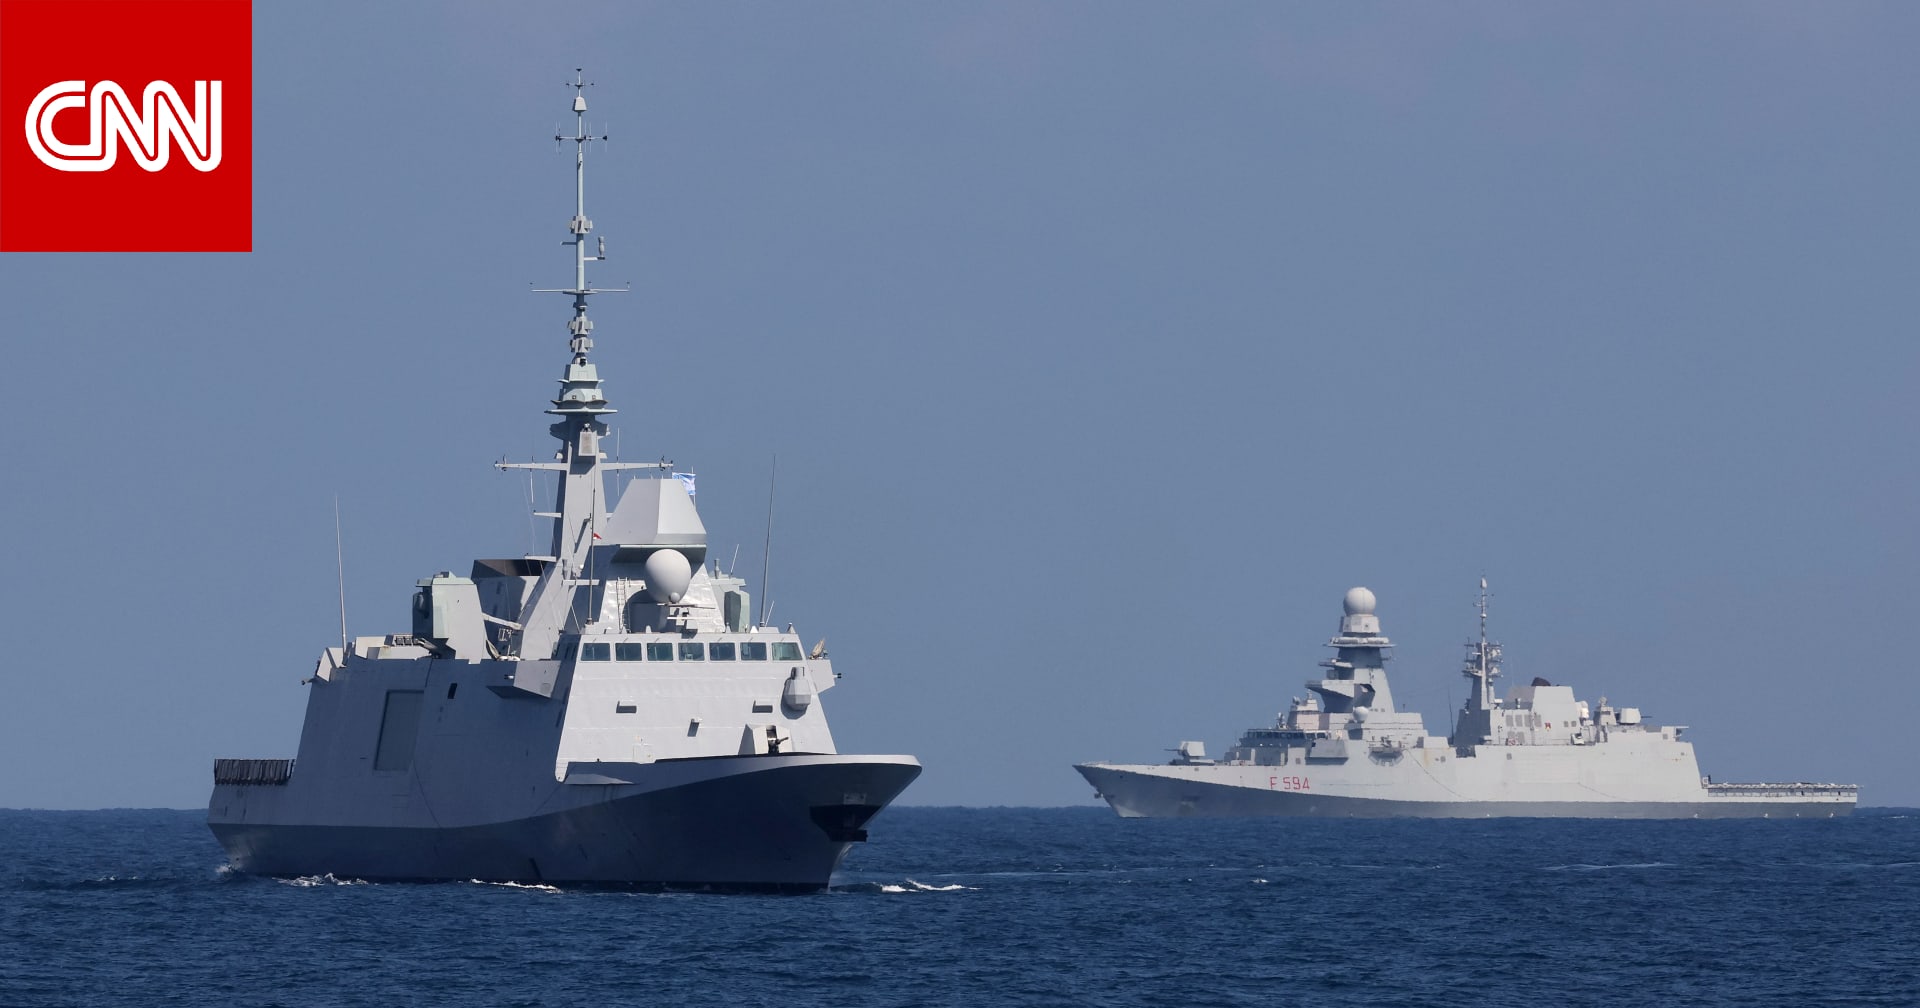 البحرية الفرنسية تدمر طائرتين مسيرتين في "هجمات متعددة بطائرات قادمة من اليمن"